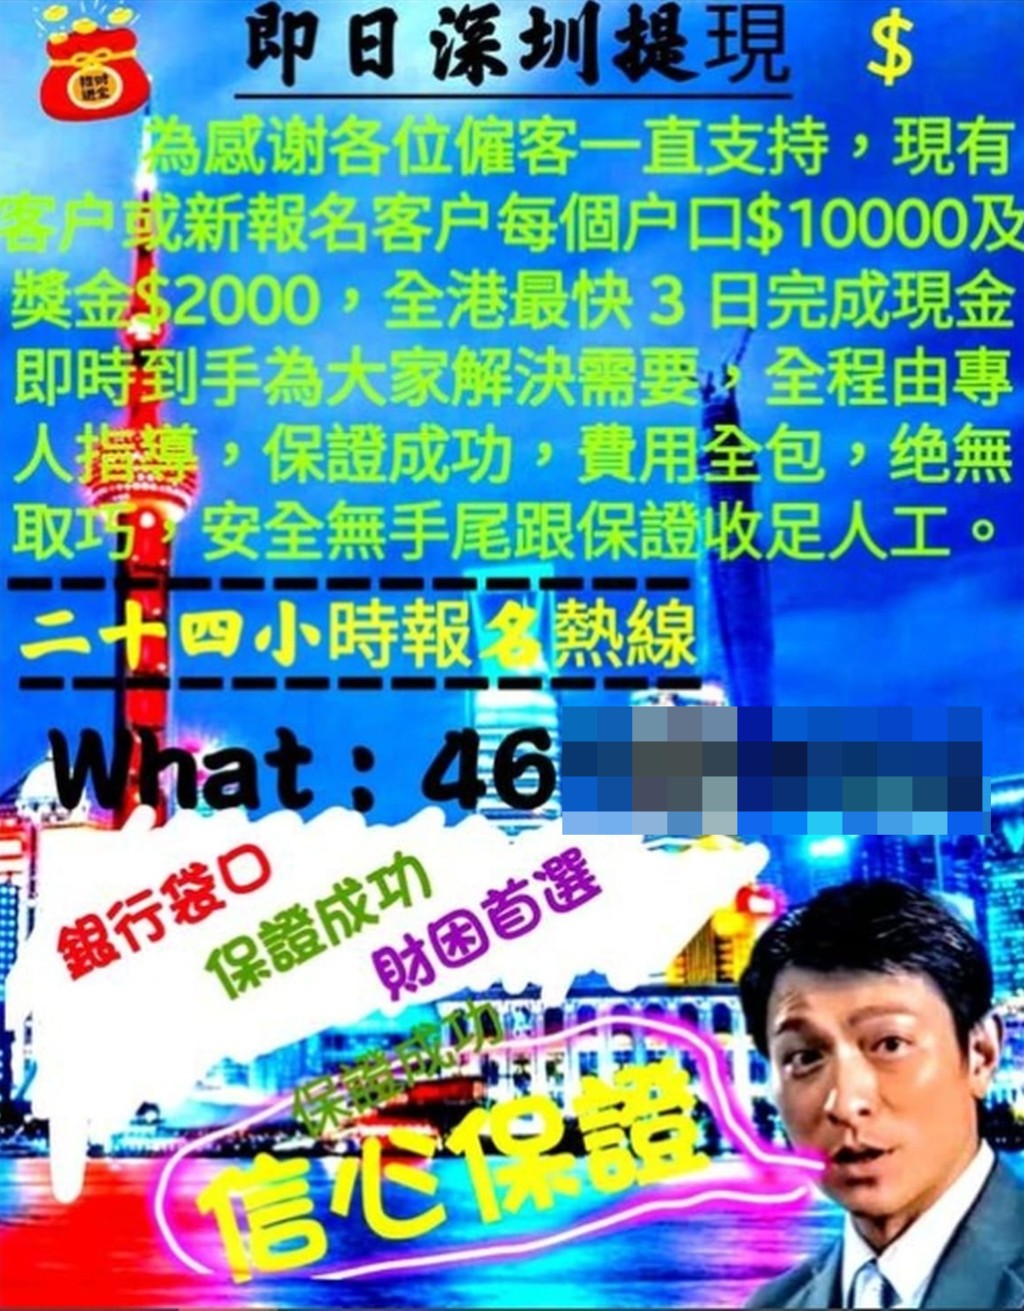 盜用著名藝人劉德華頭像的「搵快錢」貼文稱每開一個戶口可獲10000元報酬，另加2000元獎金。 網上圖片